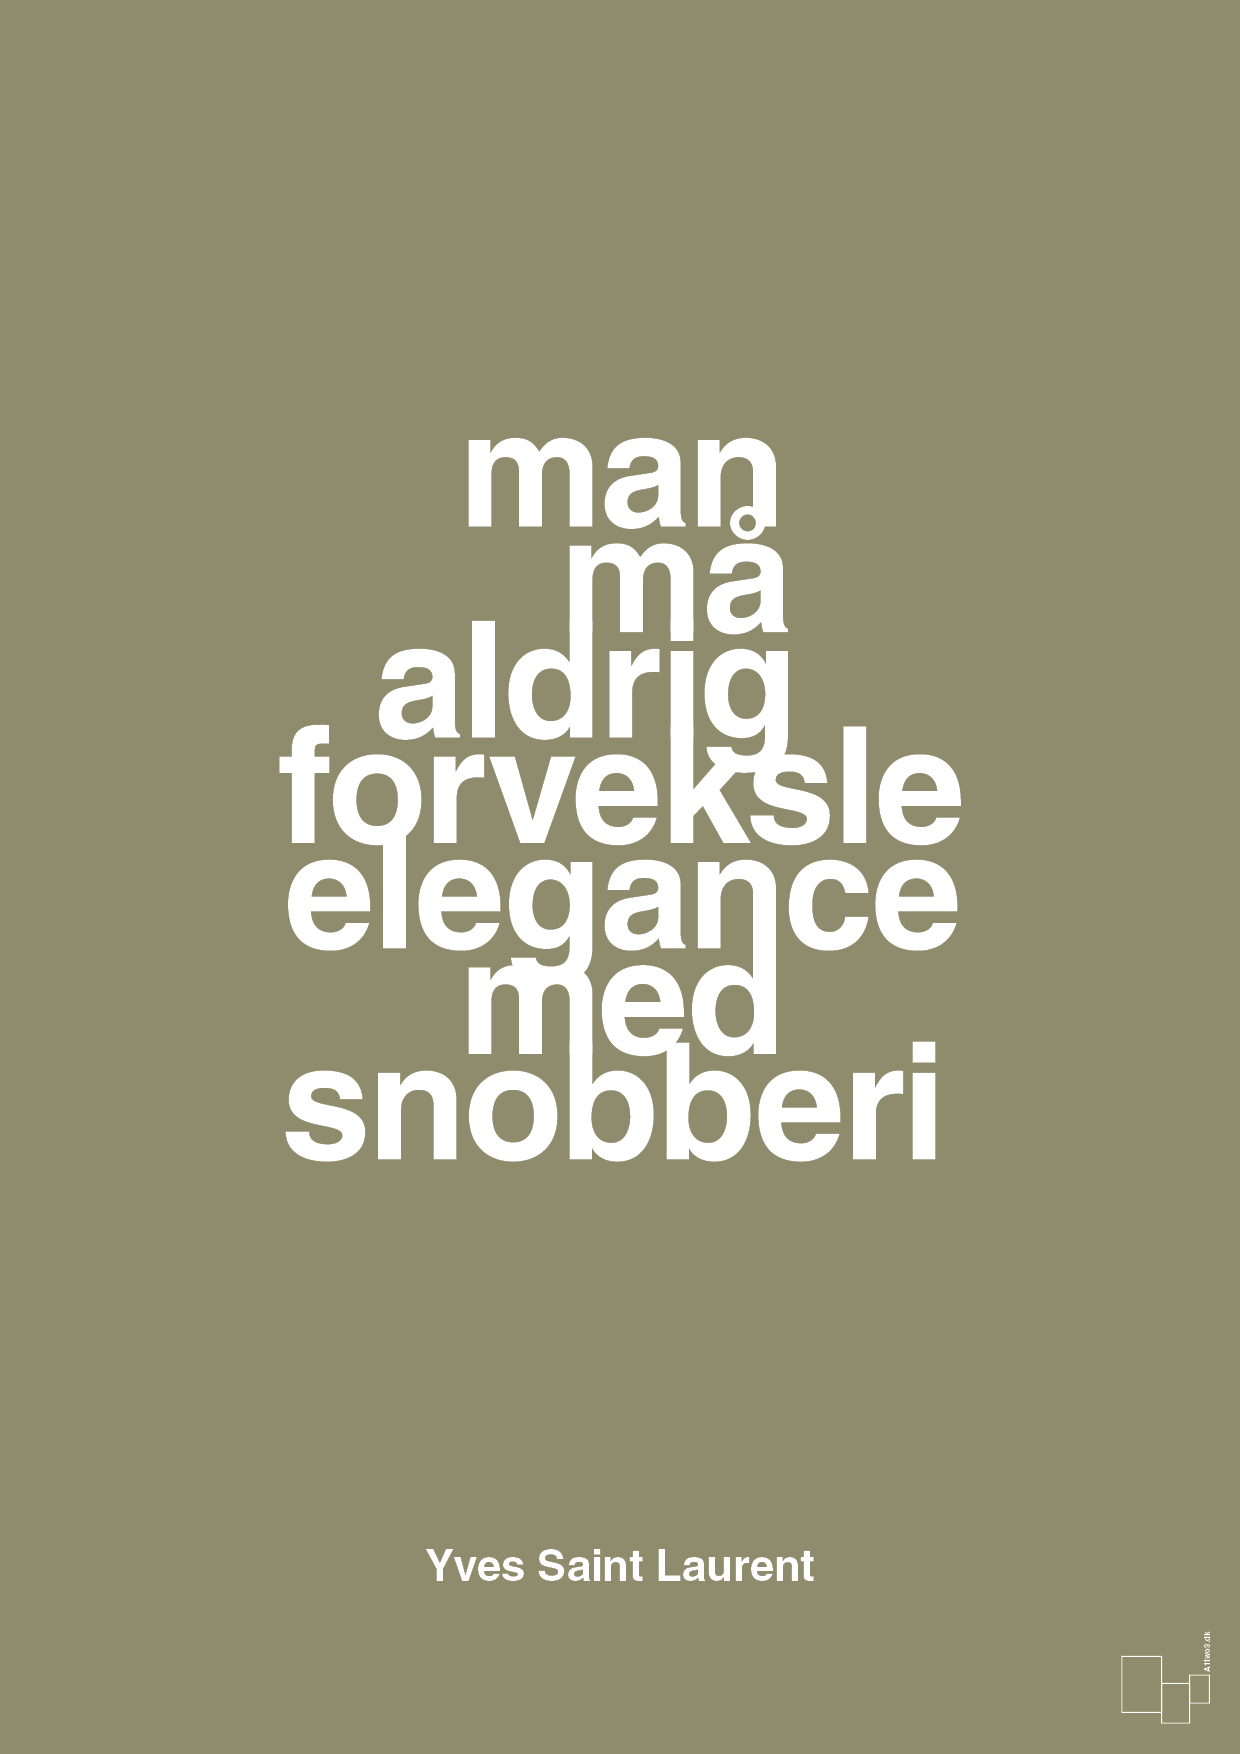 man må aldrig forveksle elegance med snobberi - Plakat med Citater i Misty Forrest